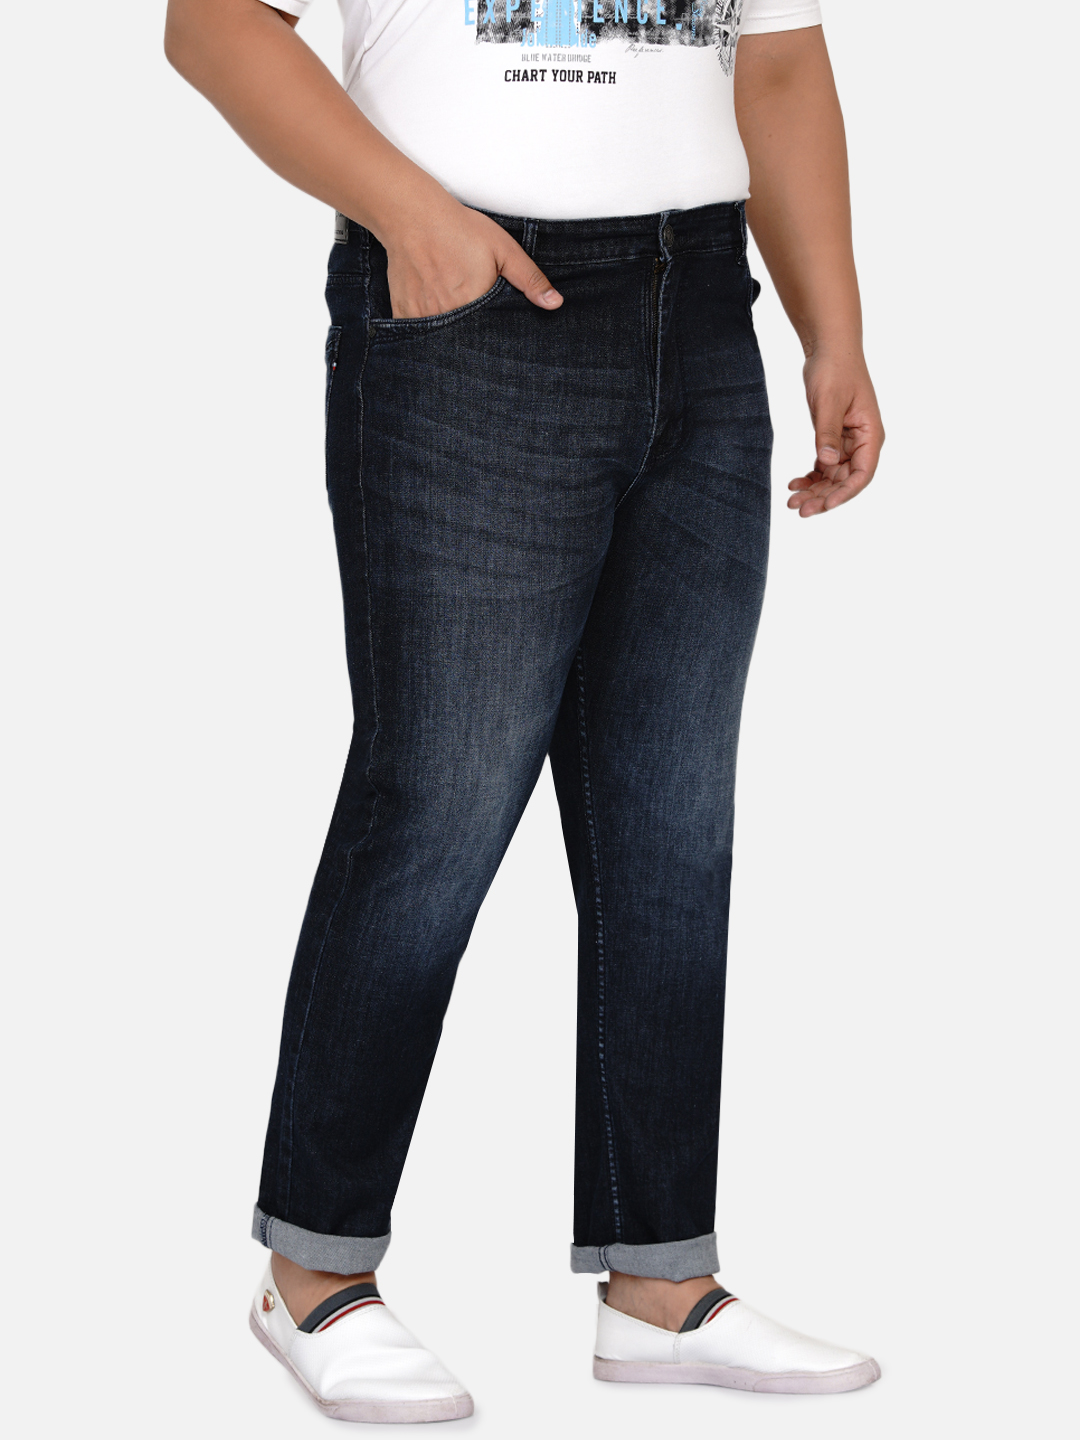 affordables/jeans/EJPJ25004/ejpj25004-4.jpg